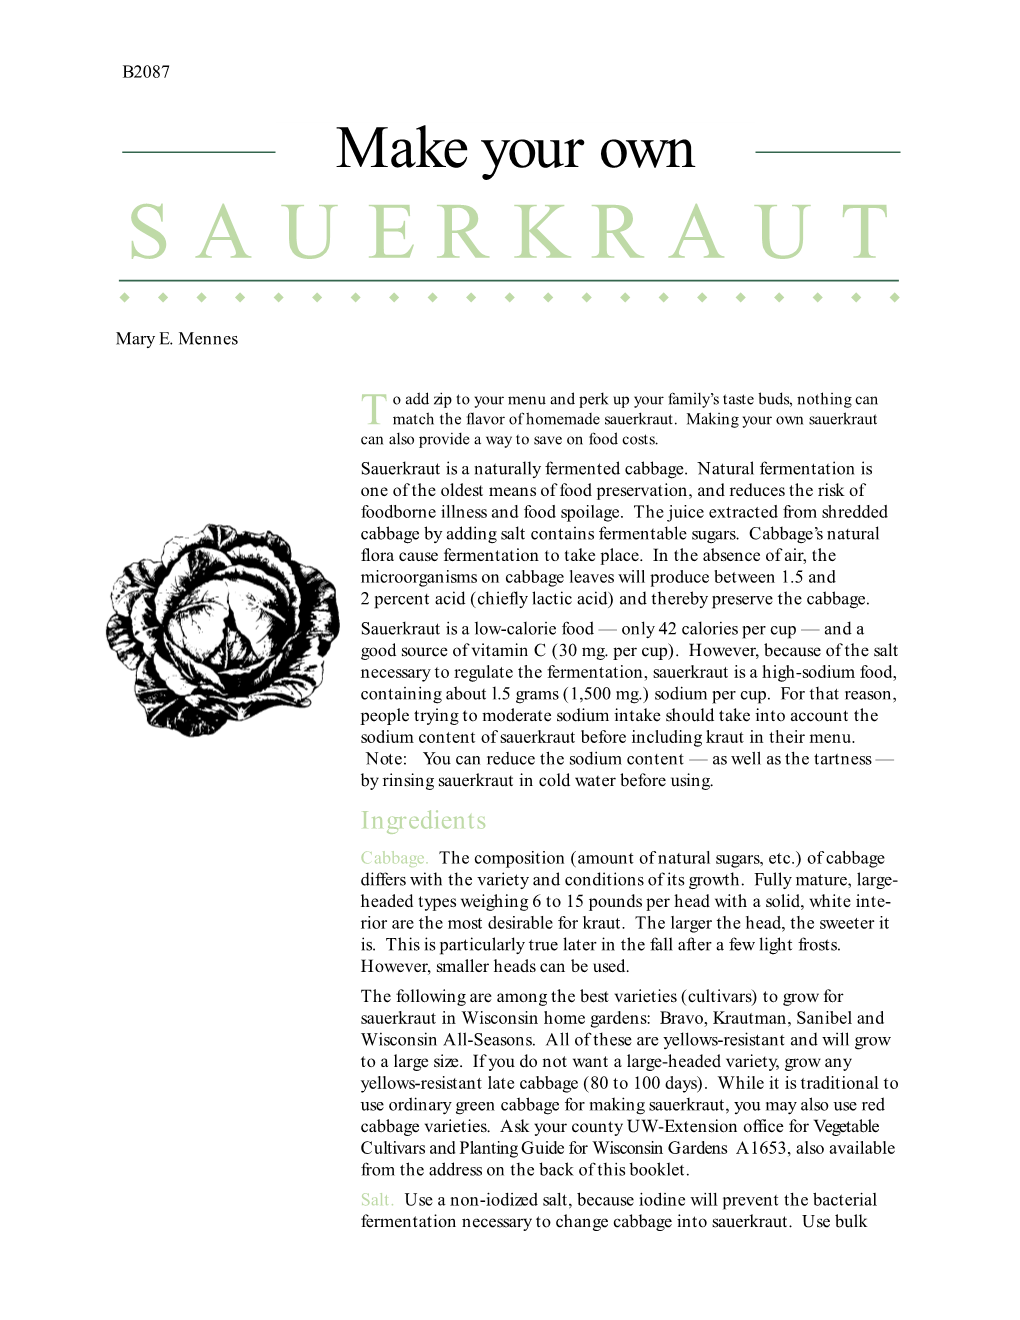 Make Your Own Sauerkraut UWEX Publication B2087